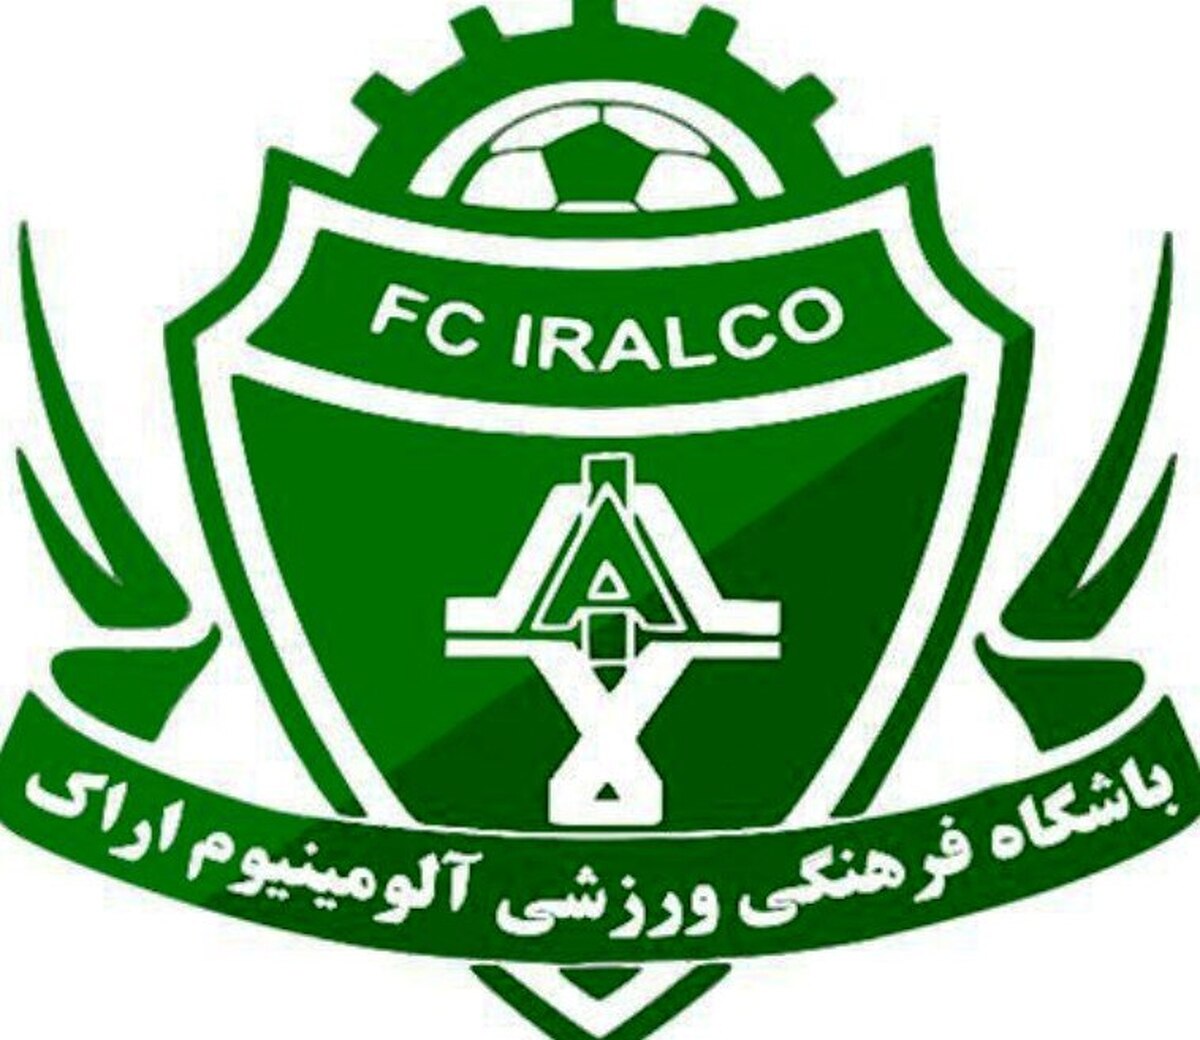 واکنش باشگاه آلومینیوم به اخبار نقل و انتقالاتی: دلالان می خواهند آرامش ما را بگیرند